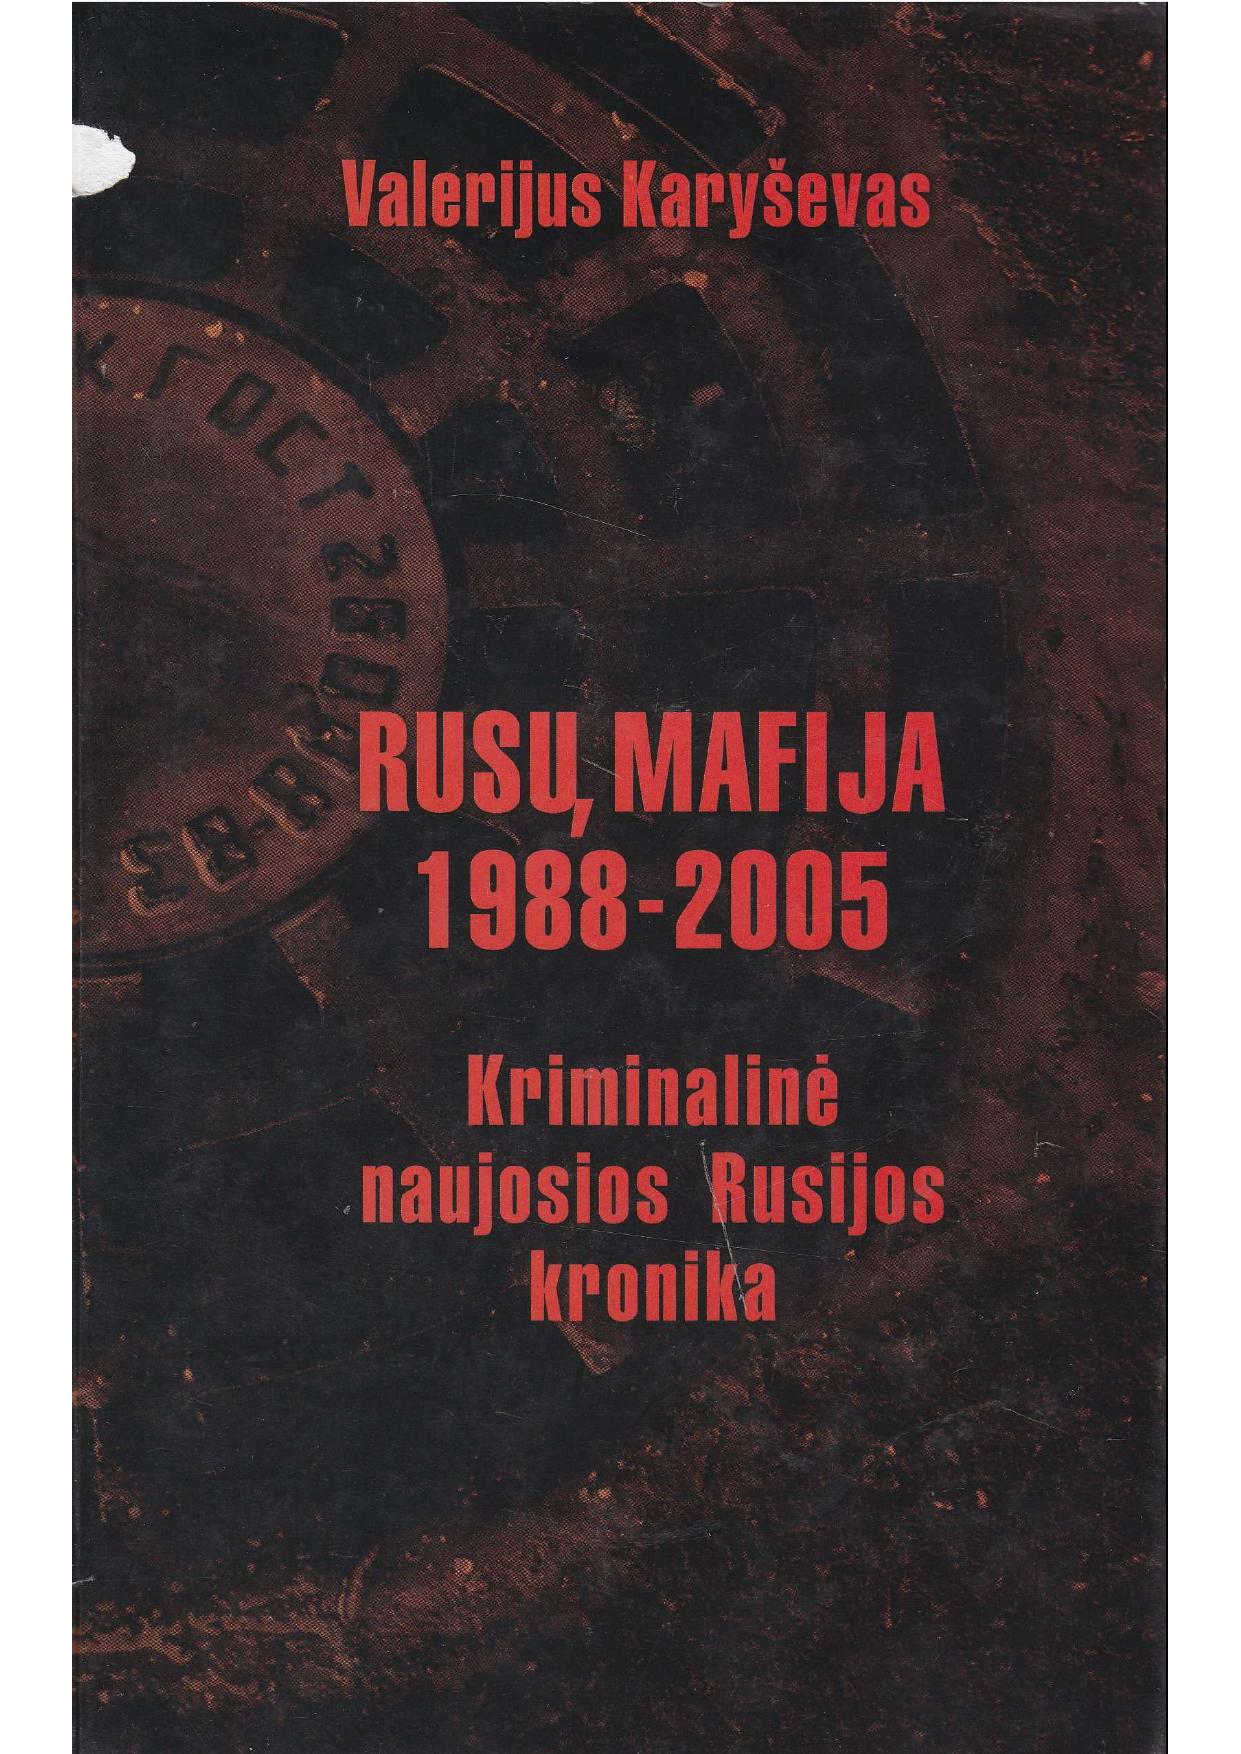 Valerijus Karyševas - Rusų mafija 1988-2005. Kriminalinė naujosios Rusijos kronika (2007) LT - NRL